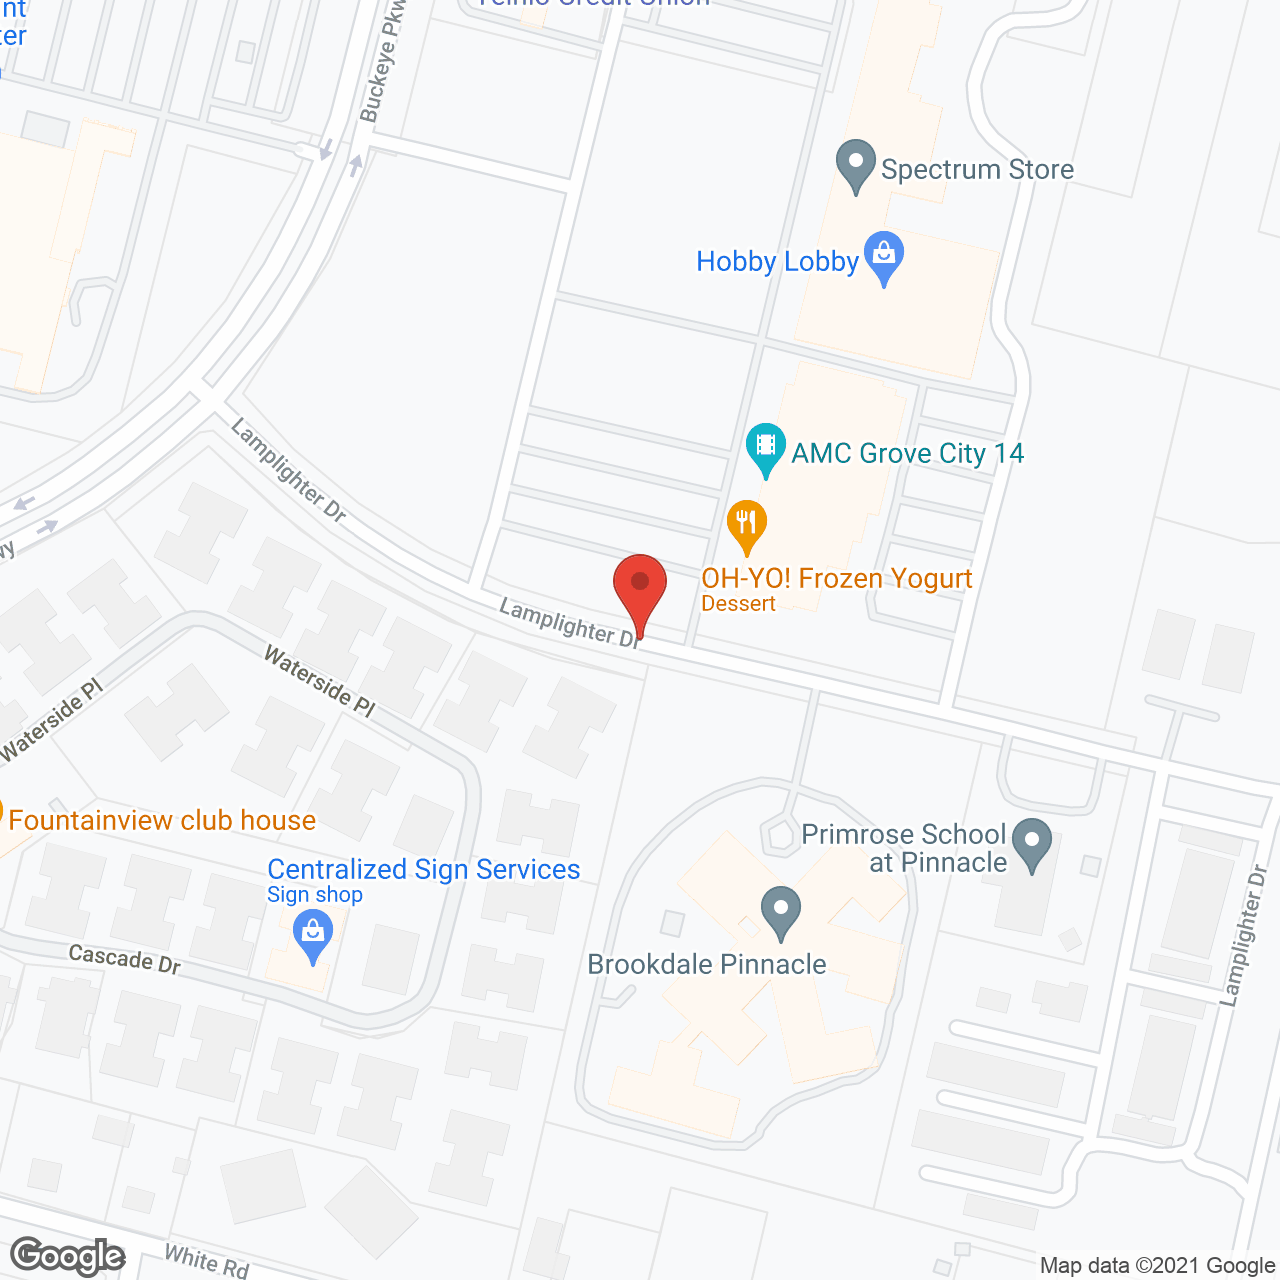 Brookdale Pinnacle in google map